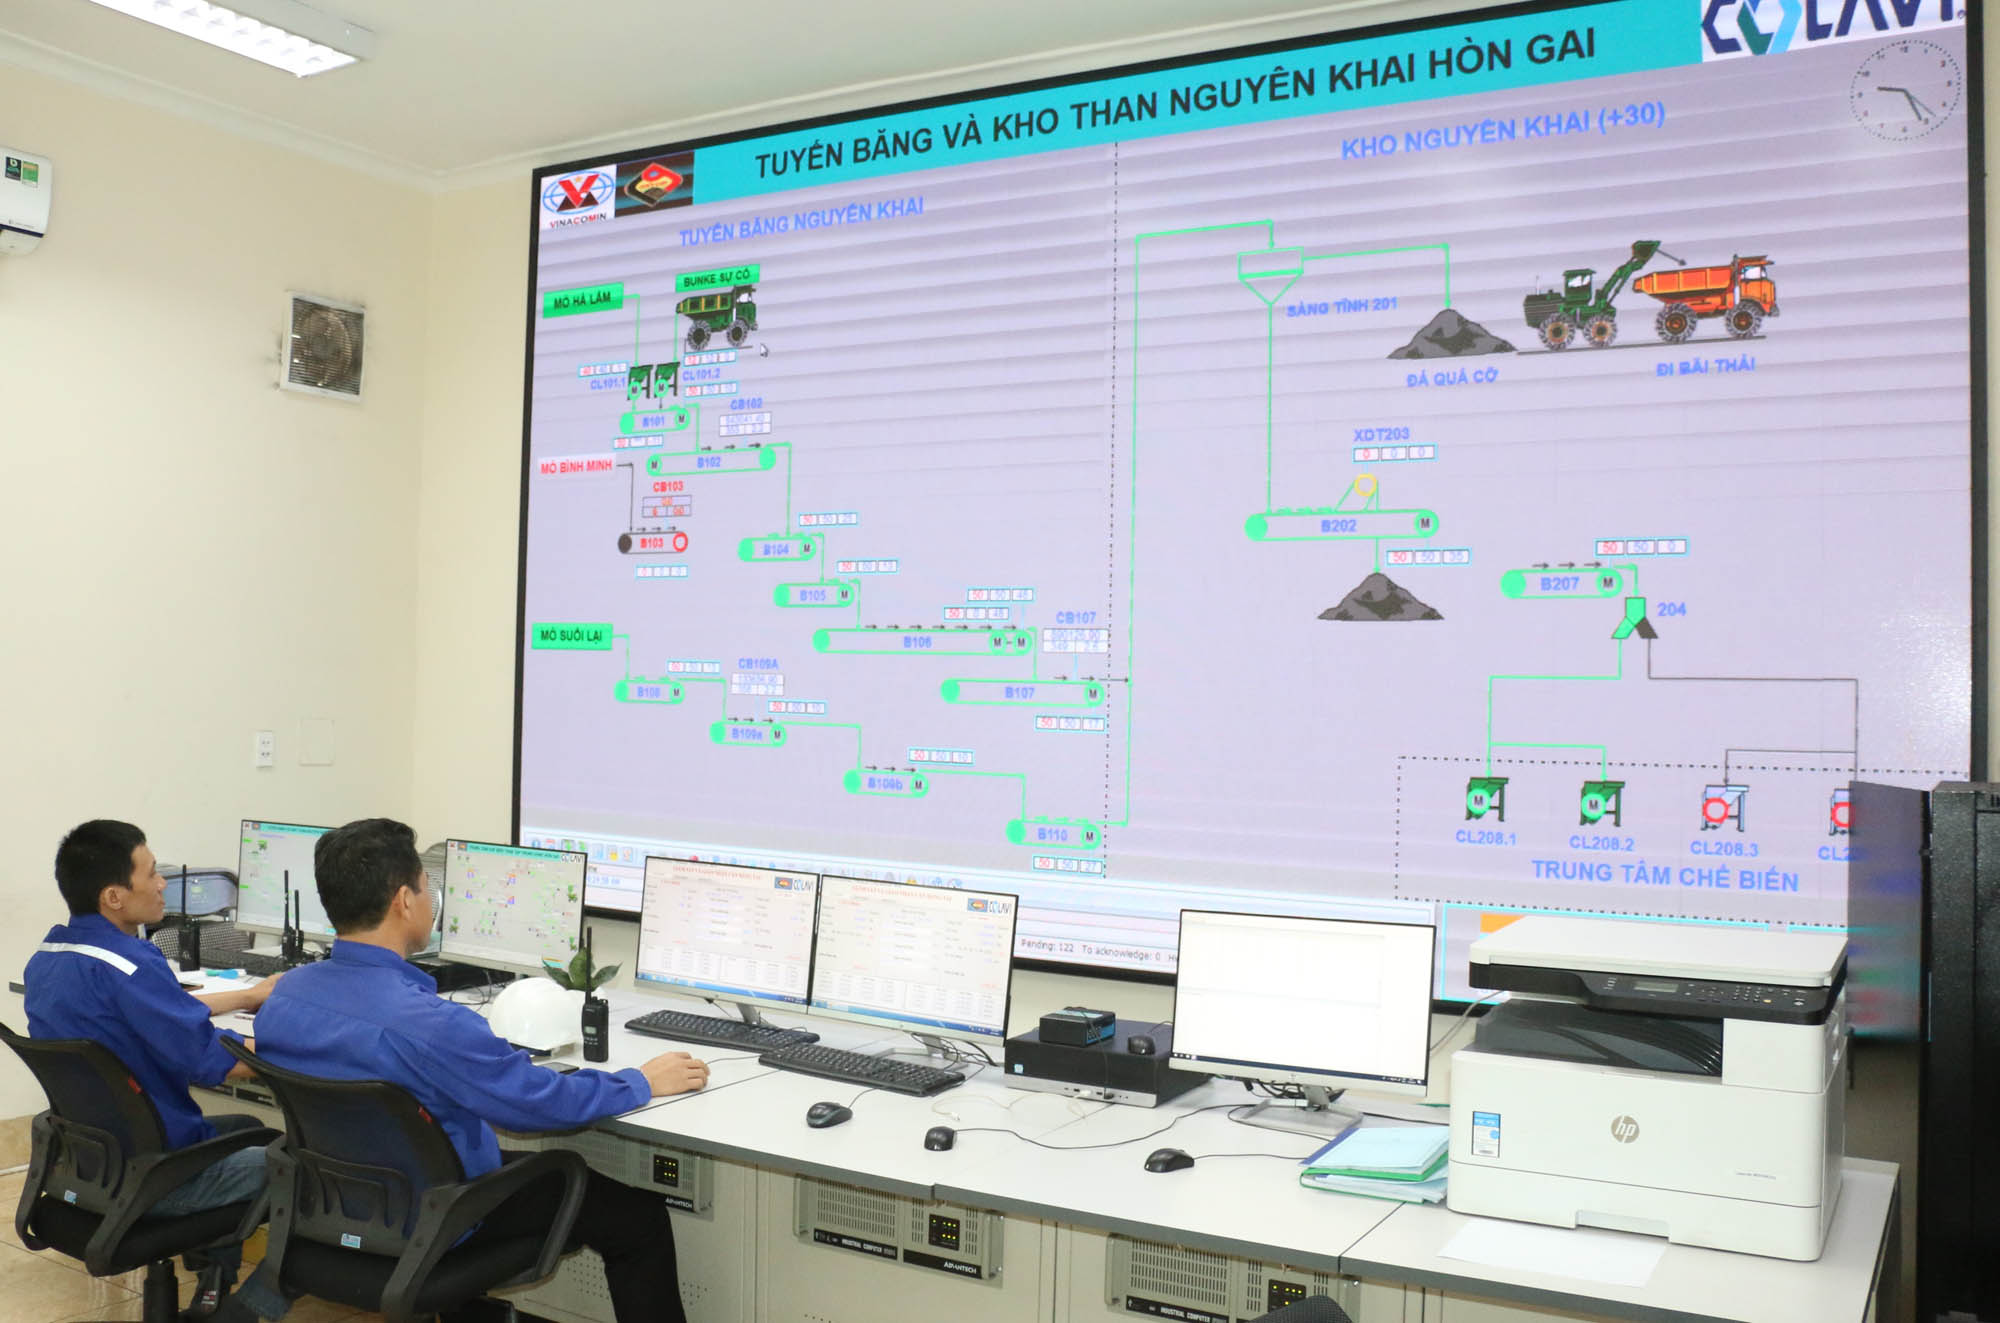 Hệ thống giám sát, điều hành tập trung tại Trung tâm Chế biến và Kho than tập trung vùng Hòn Gai của Công ty Tuyển than Hòn Gai.